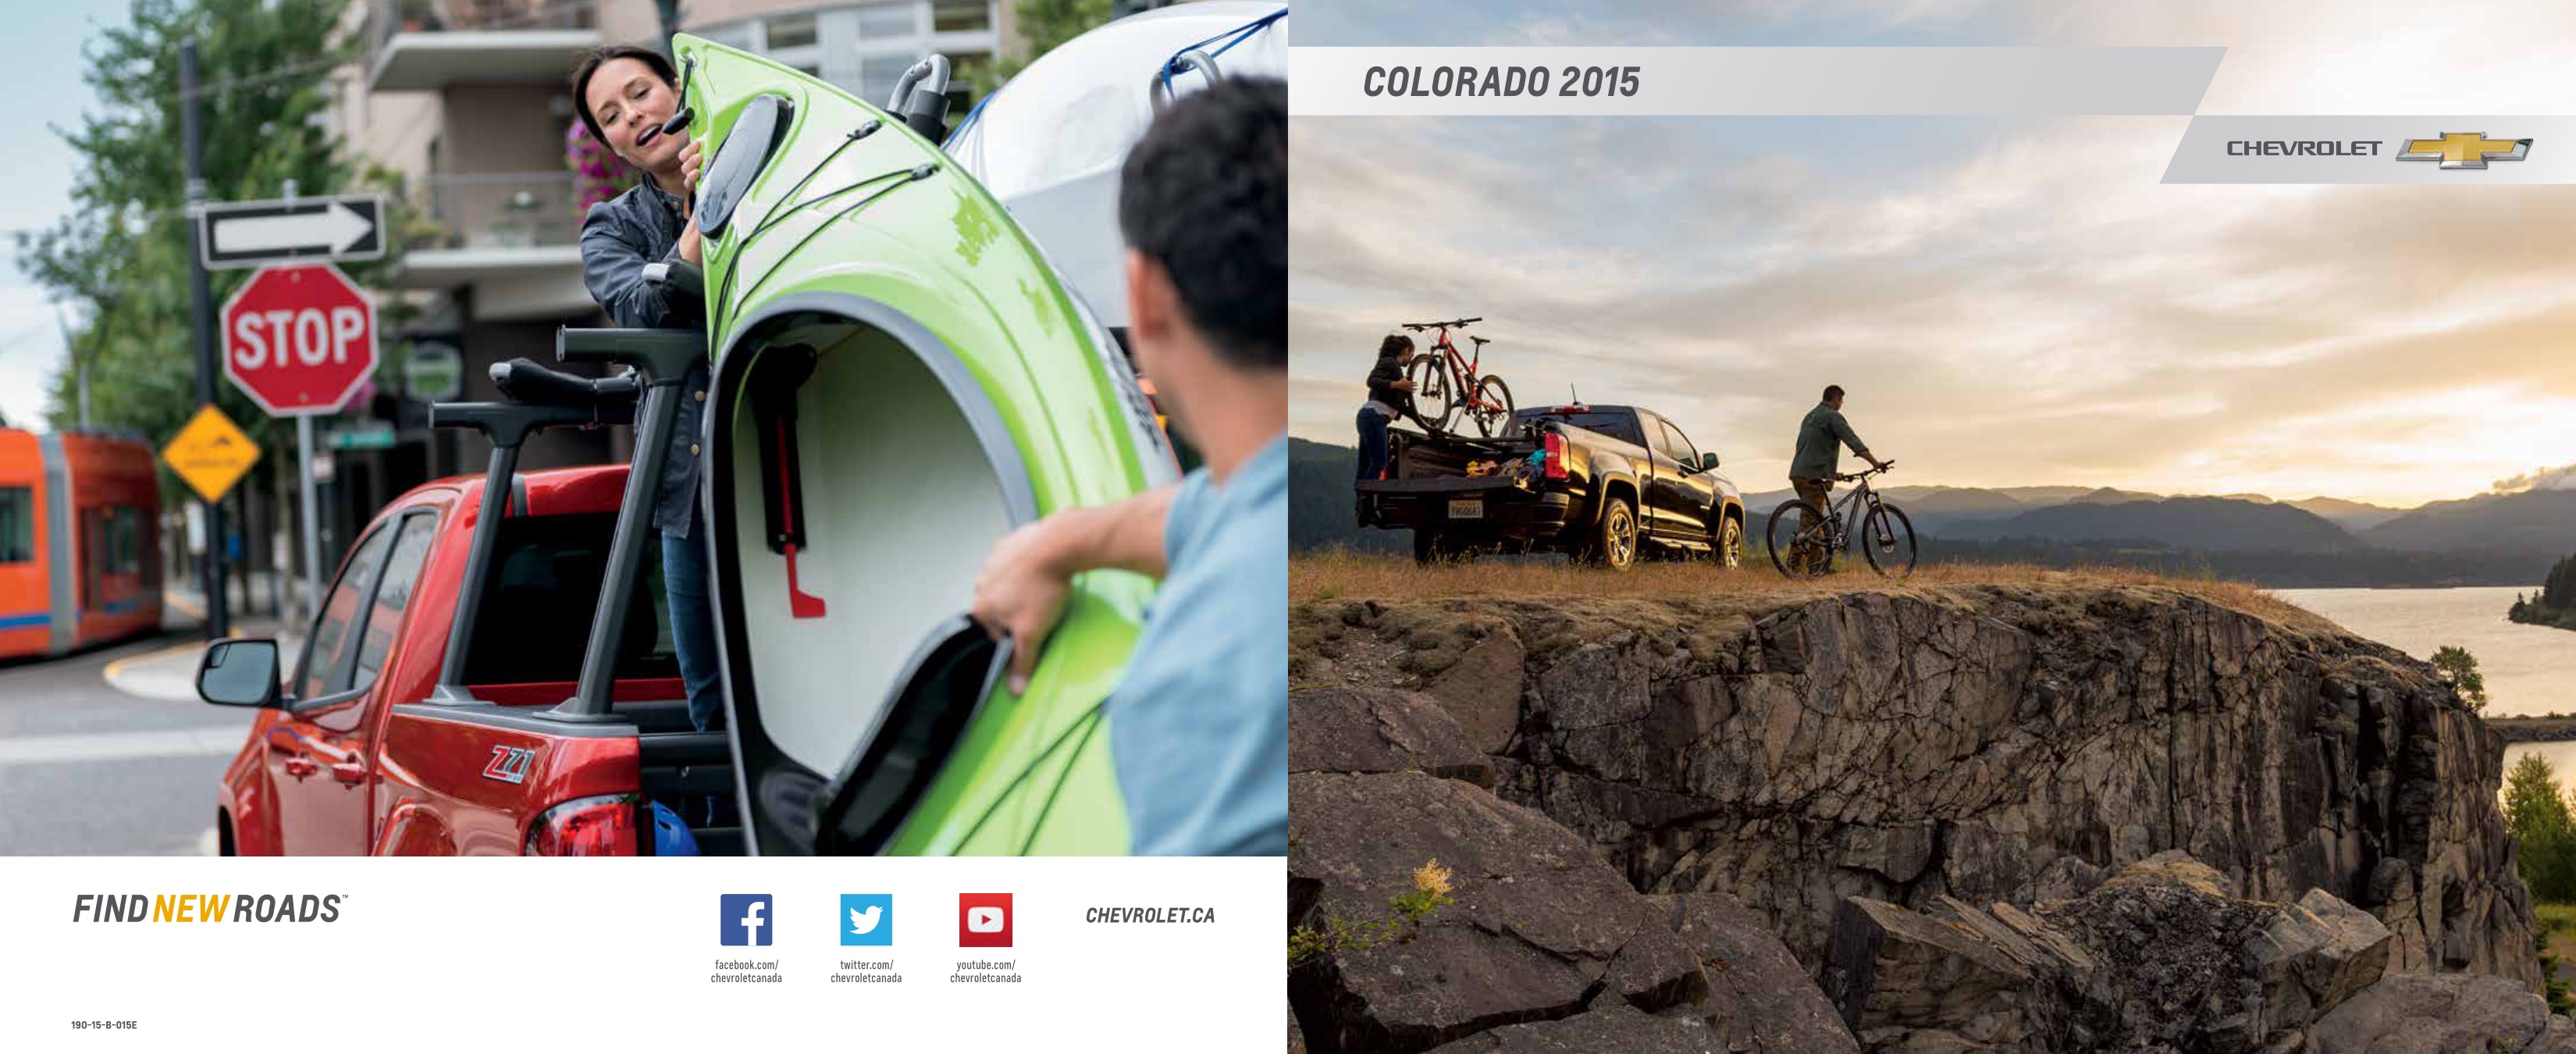 2015 Chevrolet Colorado Brochure